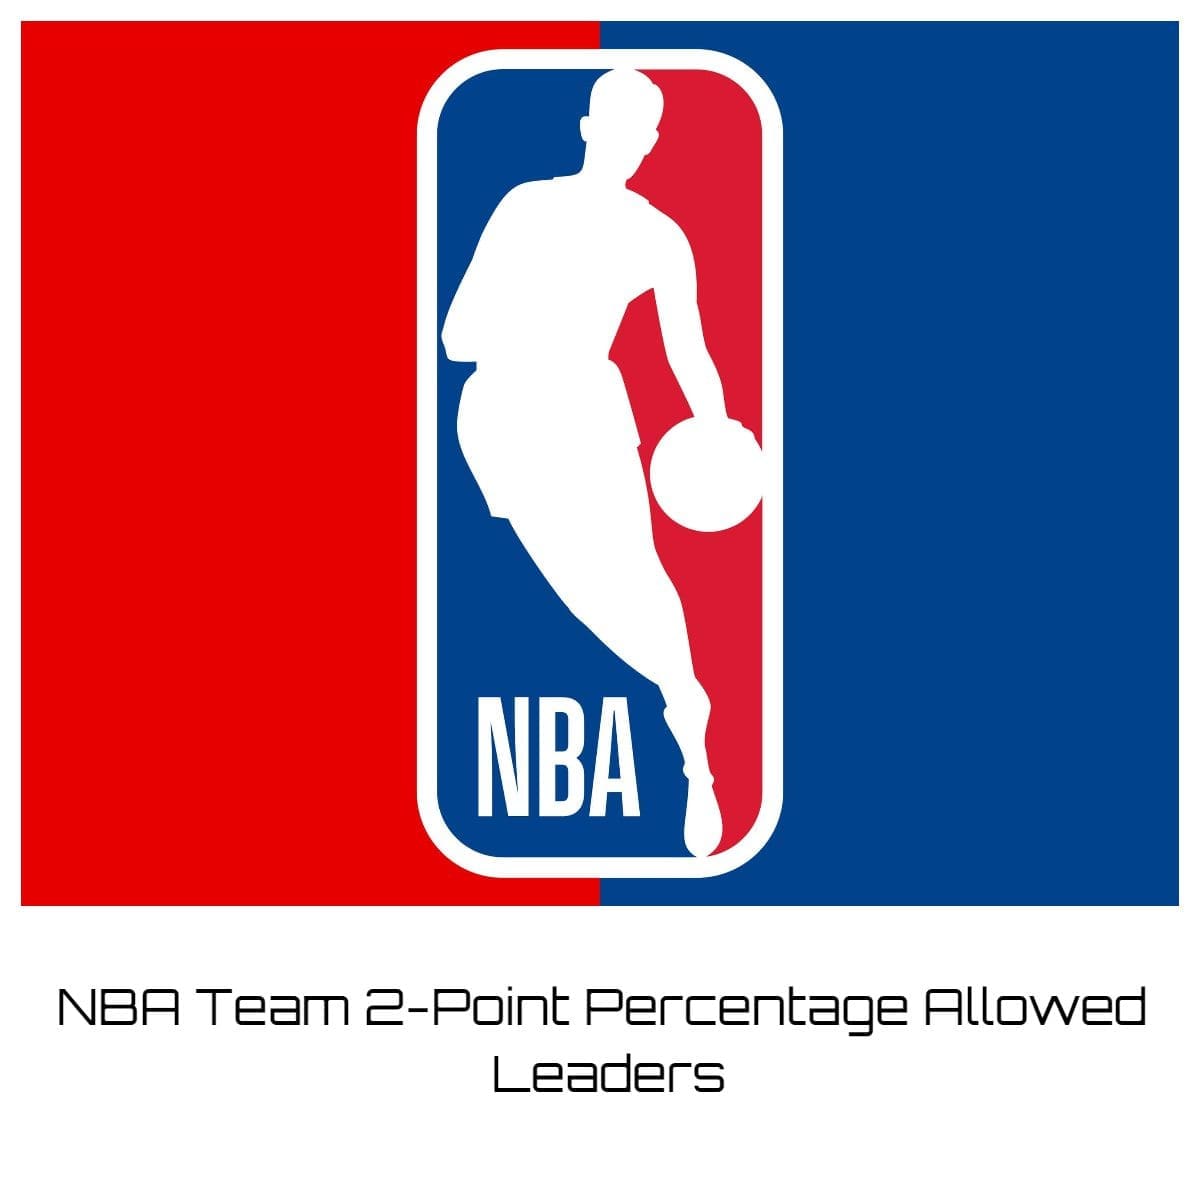 NBA Team 2-Point Percentage Allowed Leaders